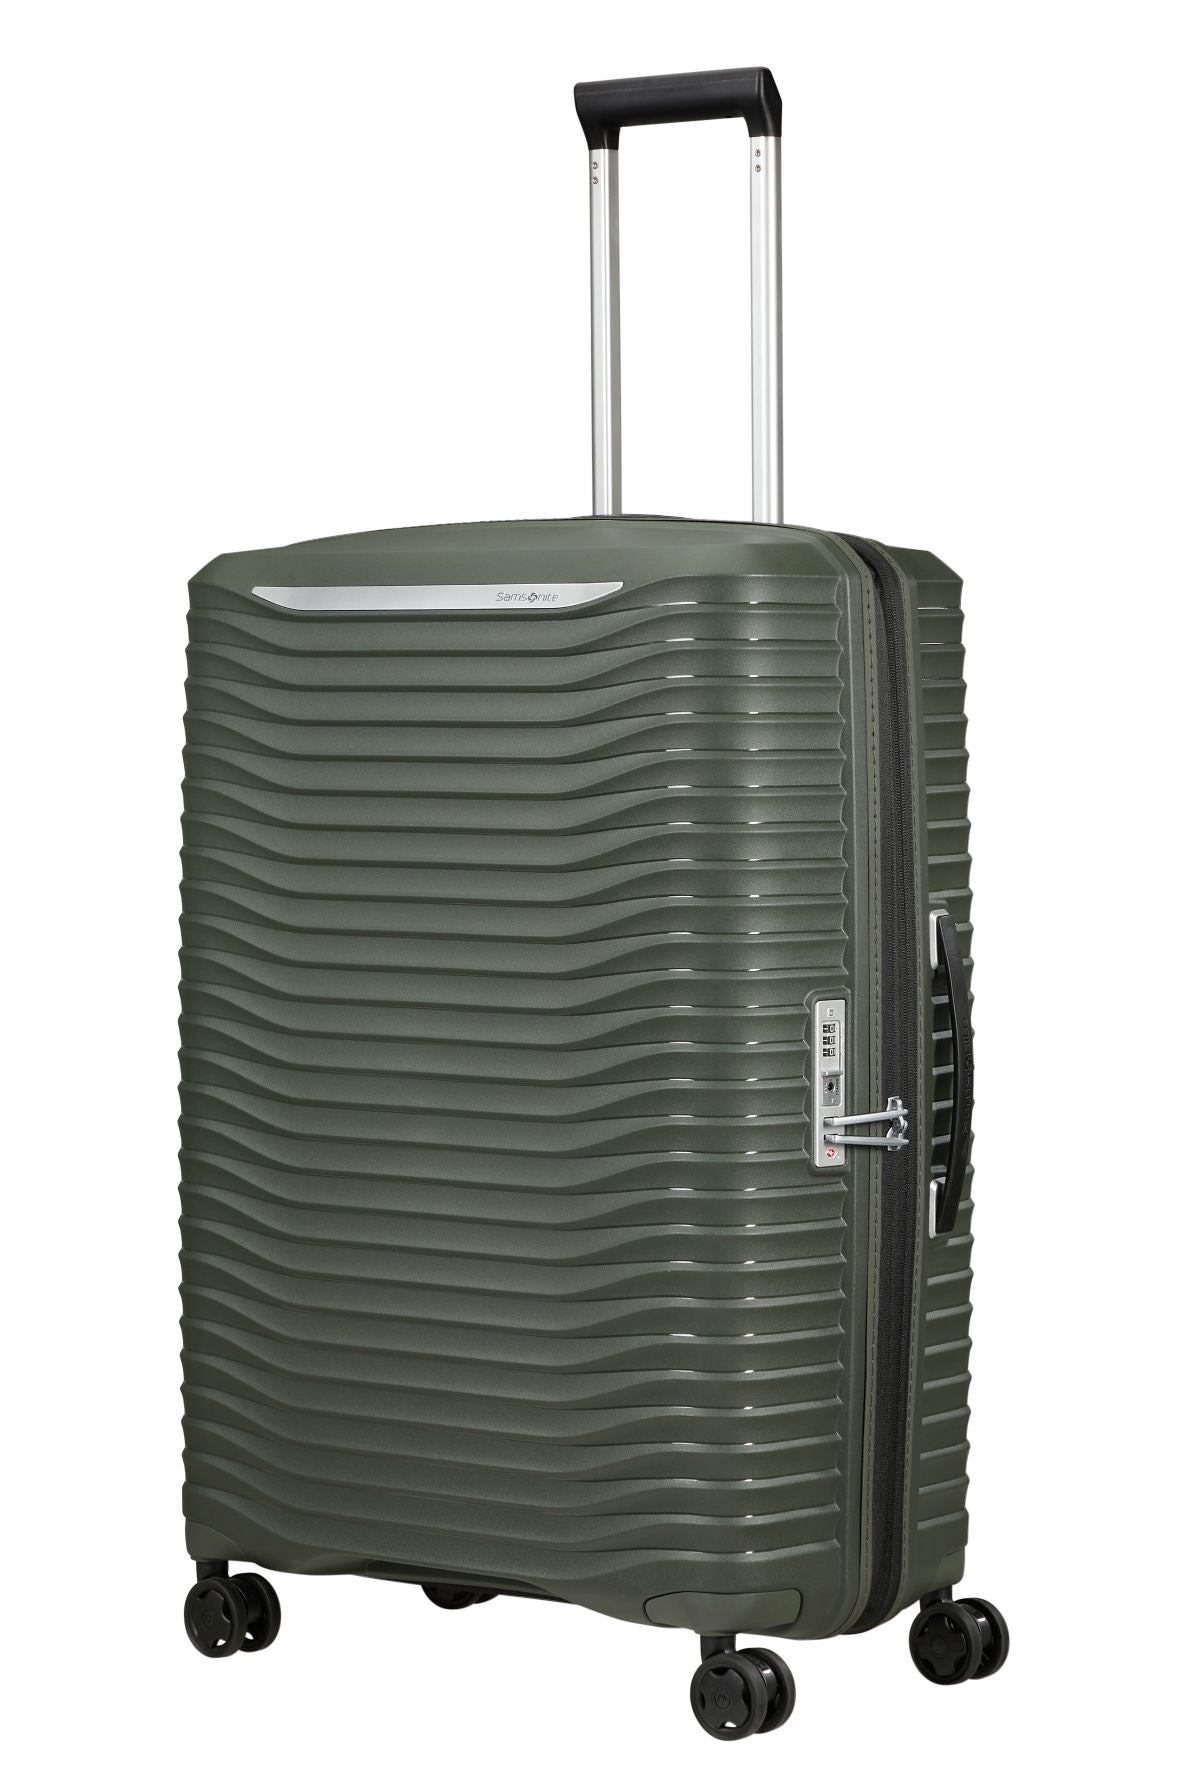 Samsonite - Upscape 75cm Medium Suitcase - Climbing Ivy-13